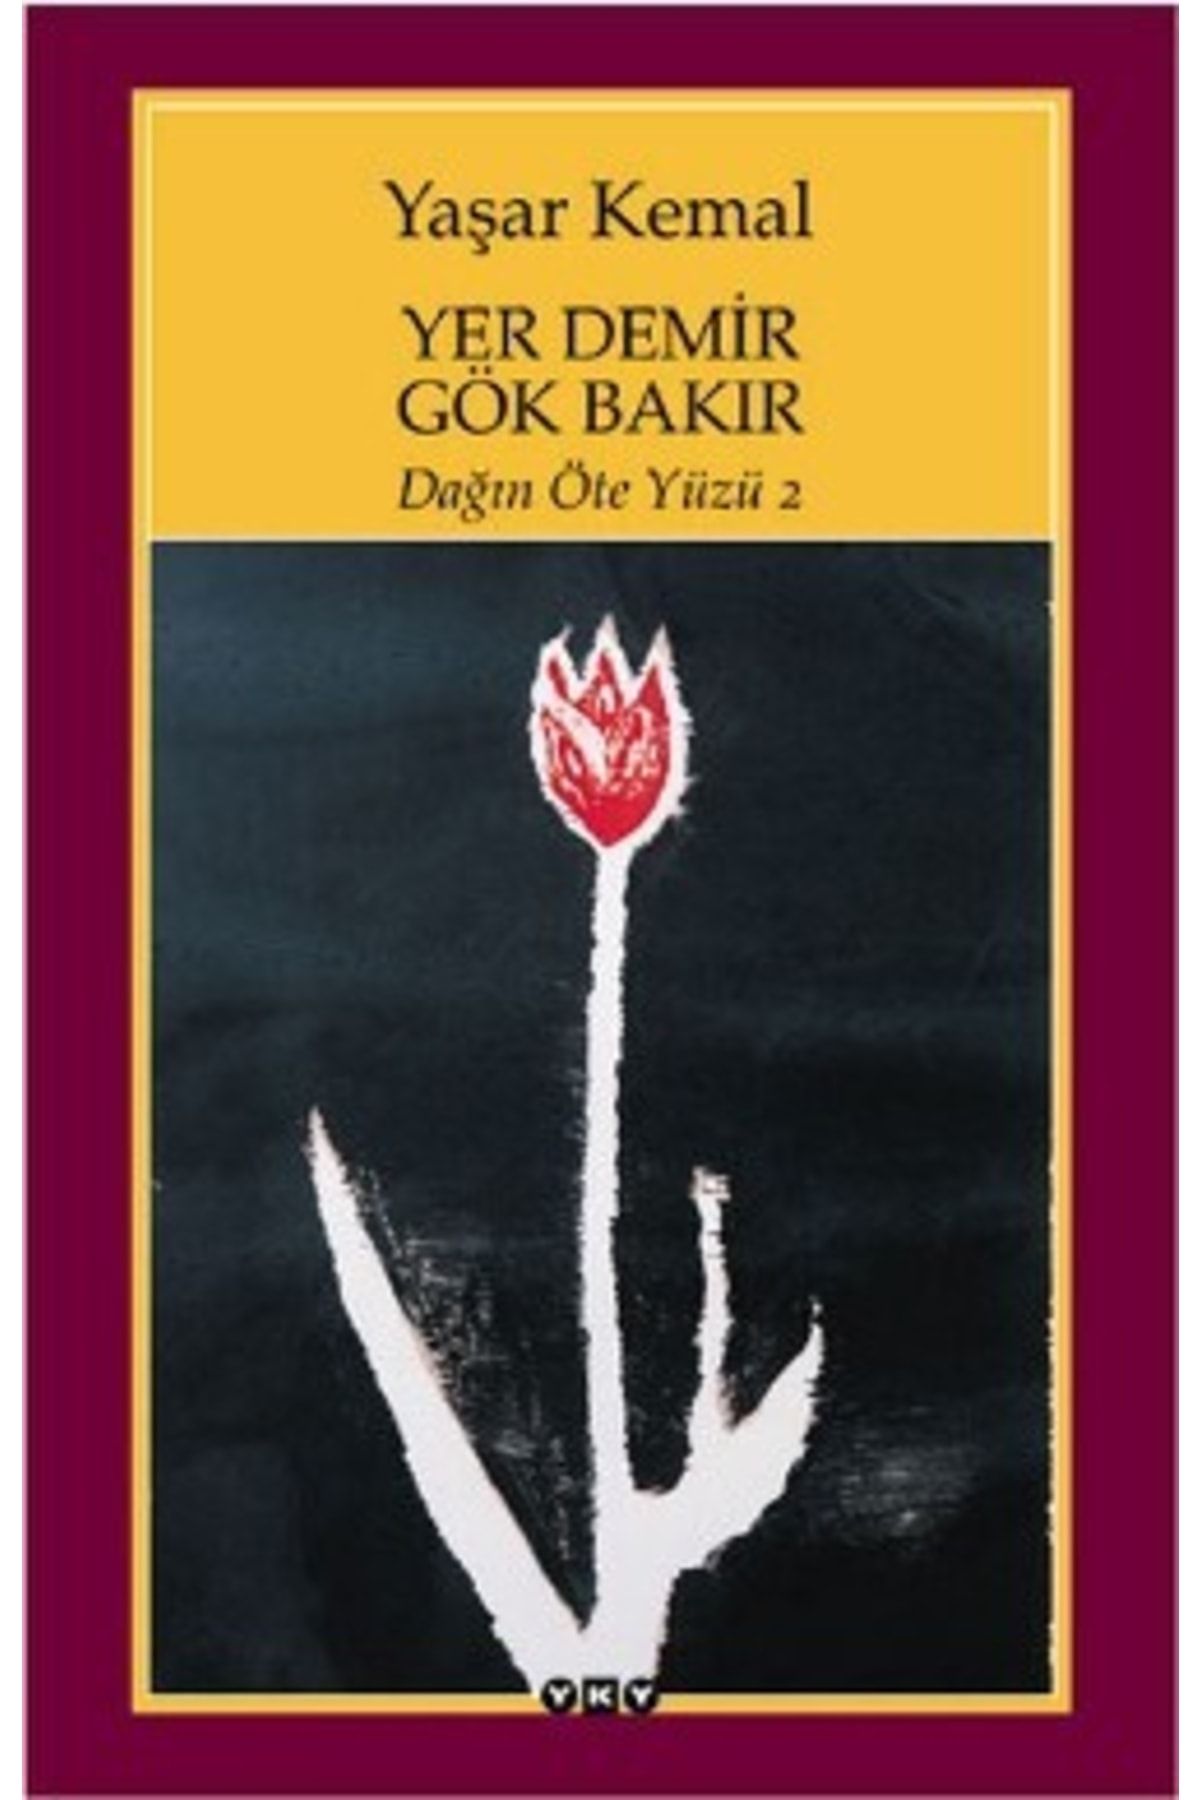 Yapı Kredi Yayınları Yer Demir Gök Bakır, Yaşar Kemal, Yapı Kredi Yayınları, Yer Demir Gök Bakır Kitabı, 383 Sayfa